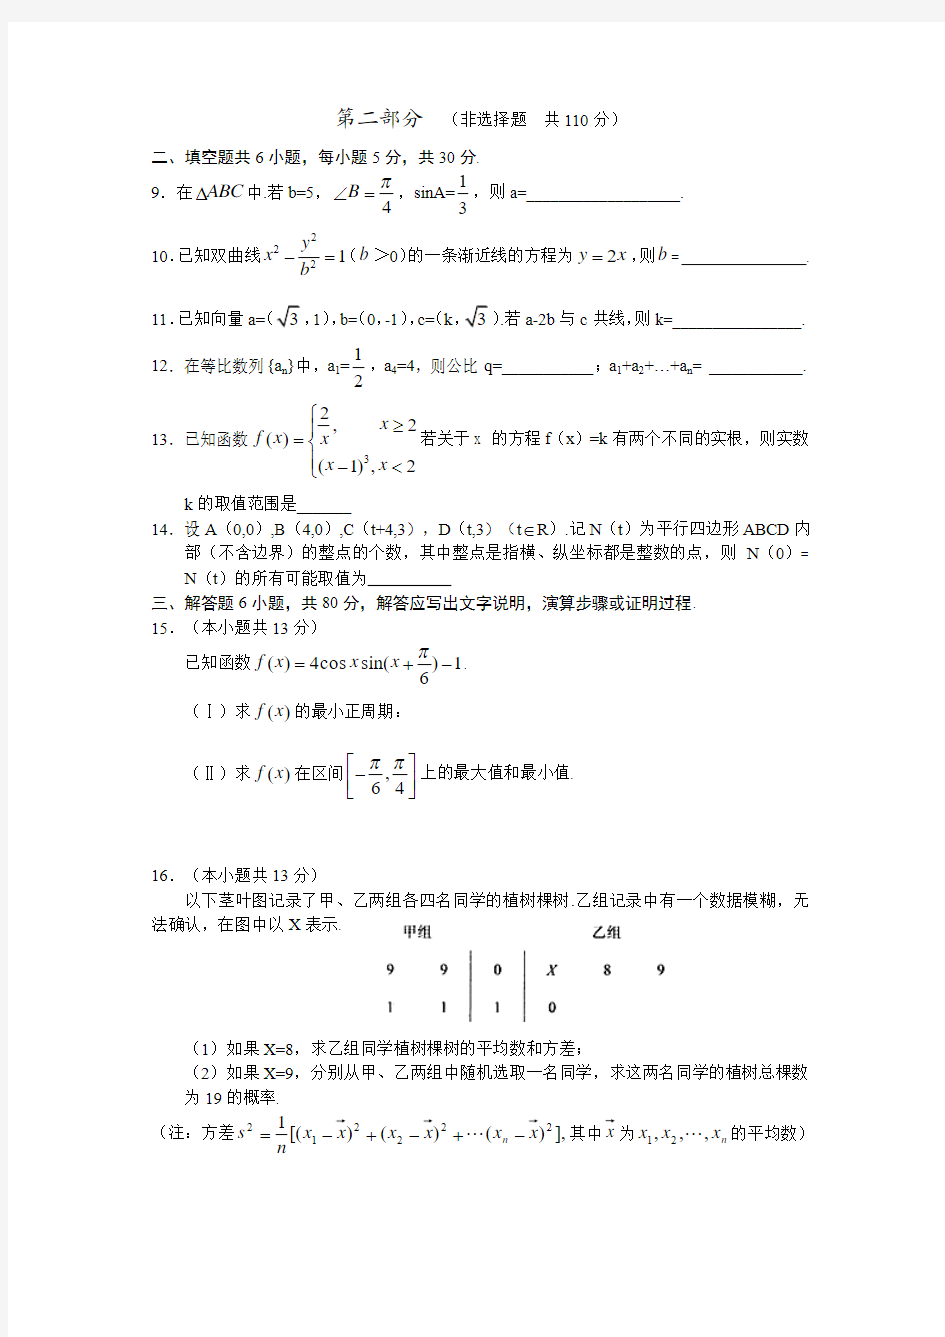 2011年高考文科数学(北京卷)